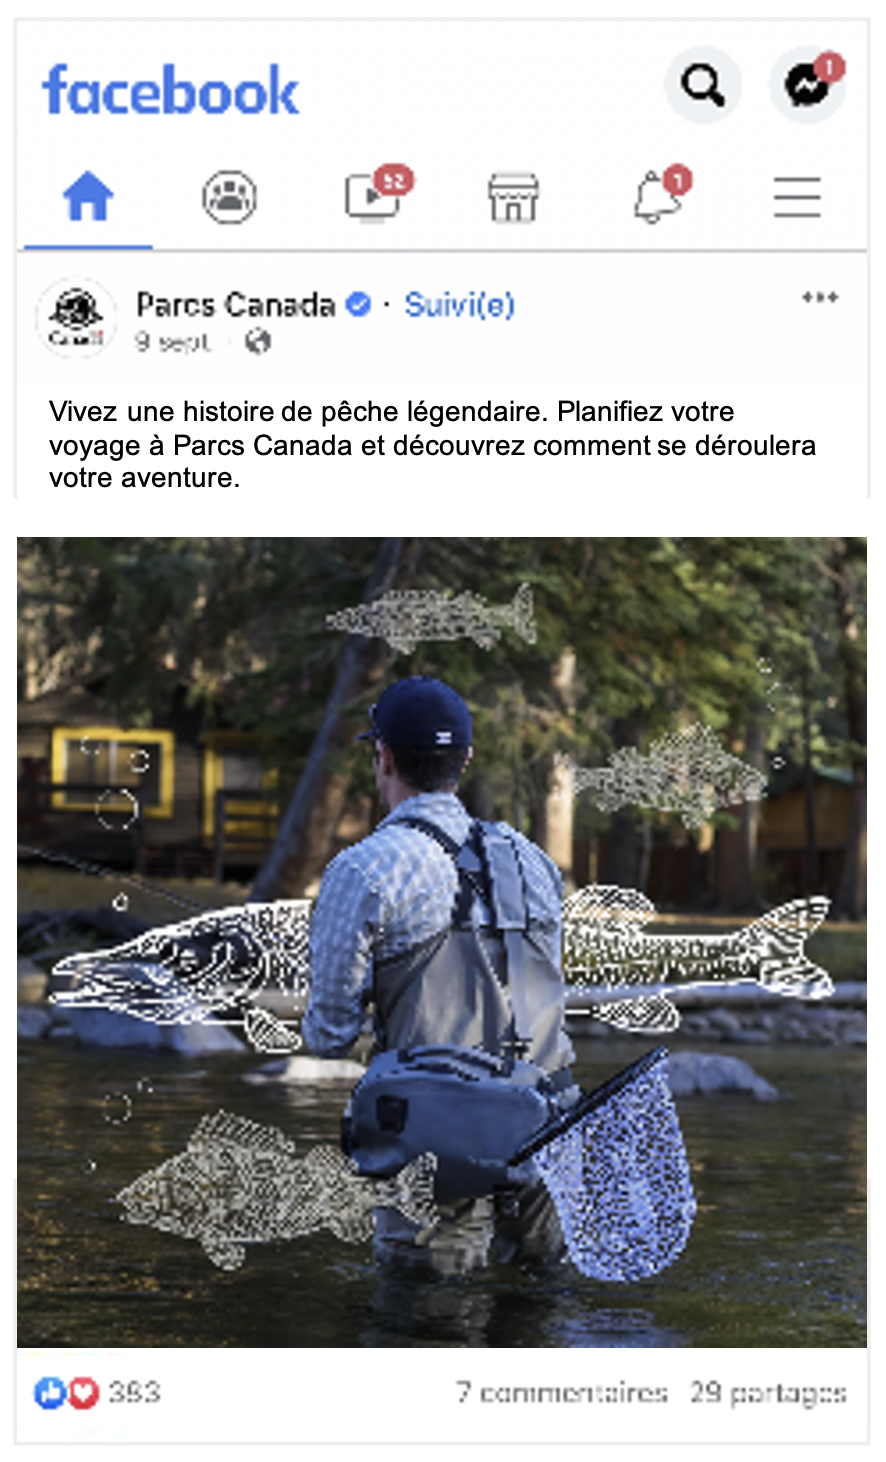 L'image est un exemple d’une publicité Facebook. La publicité est une photo d'un homme pêchant à la mouche et deux poissons sont dessinés en lignes blanches sur la photo.